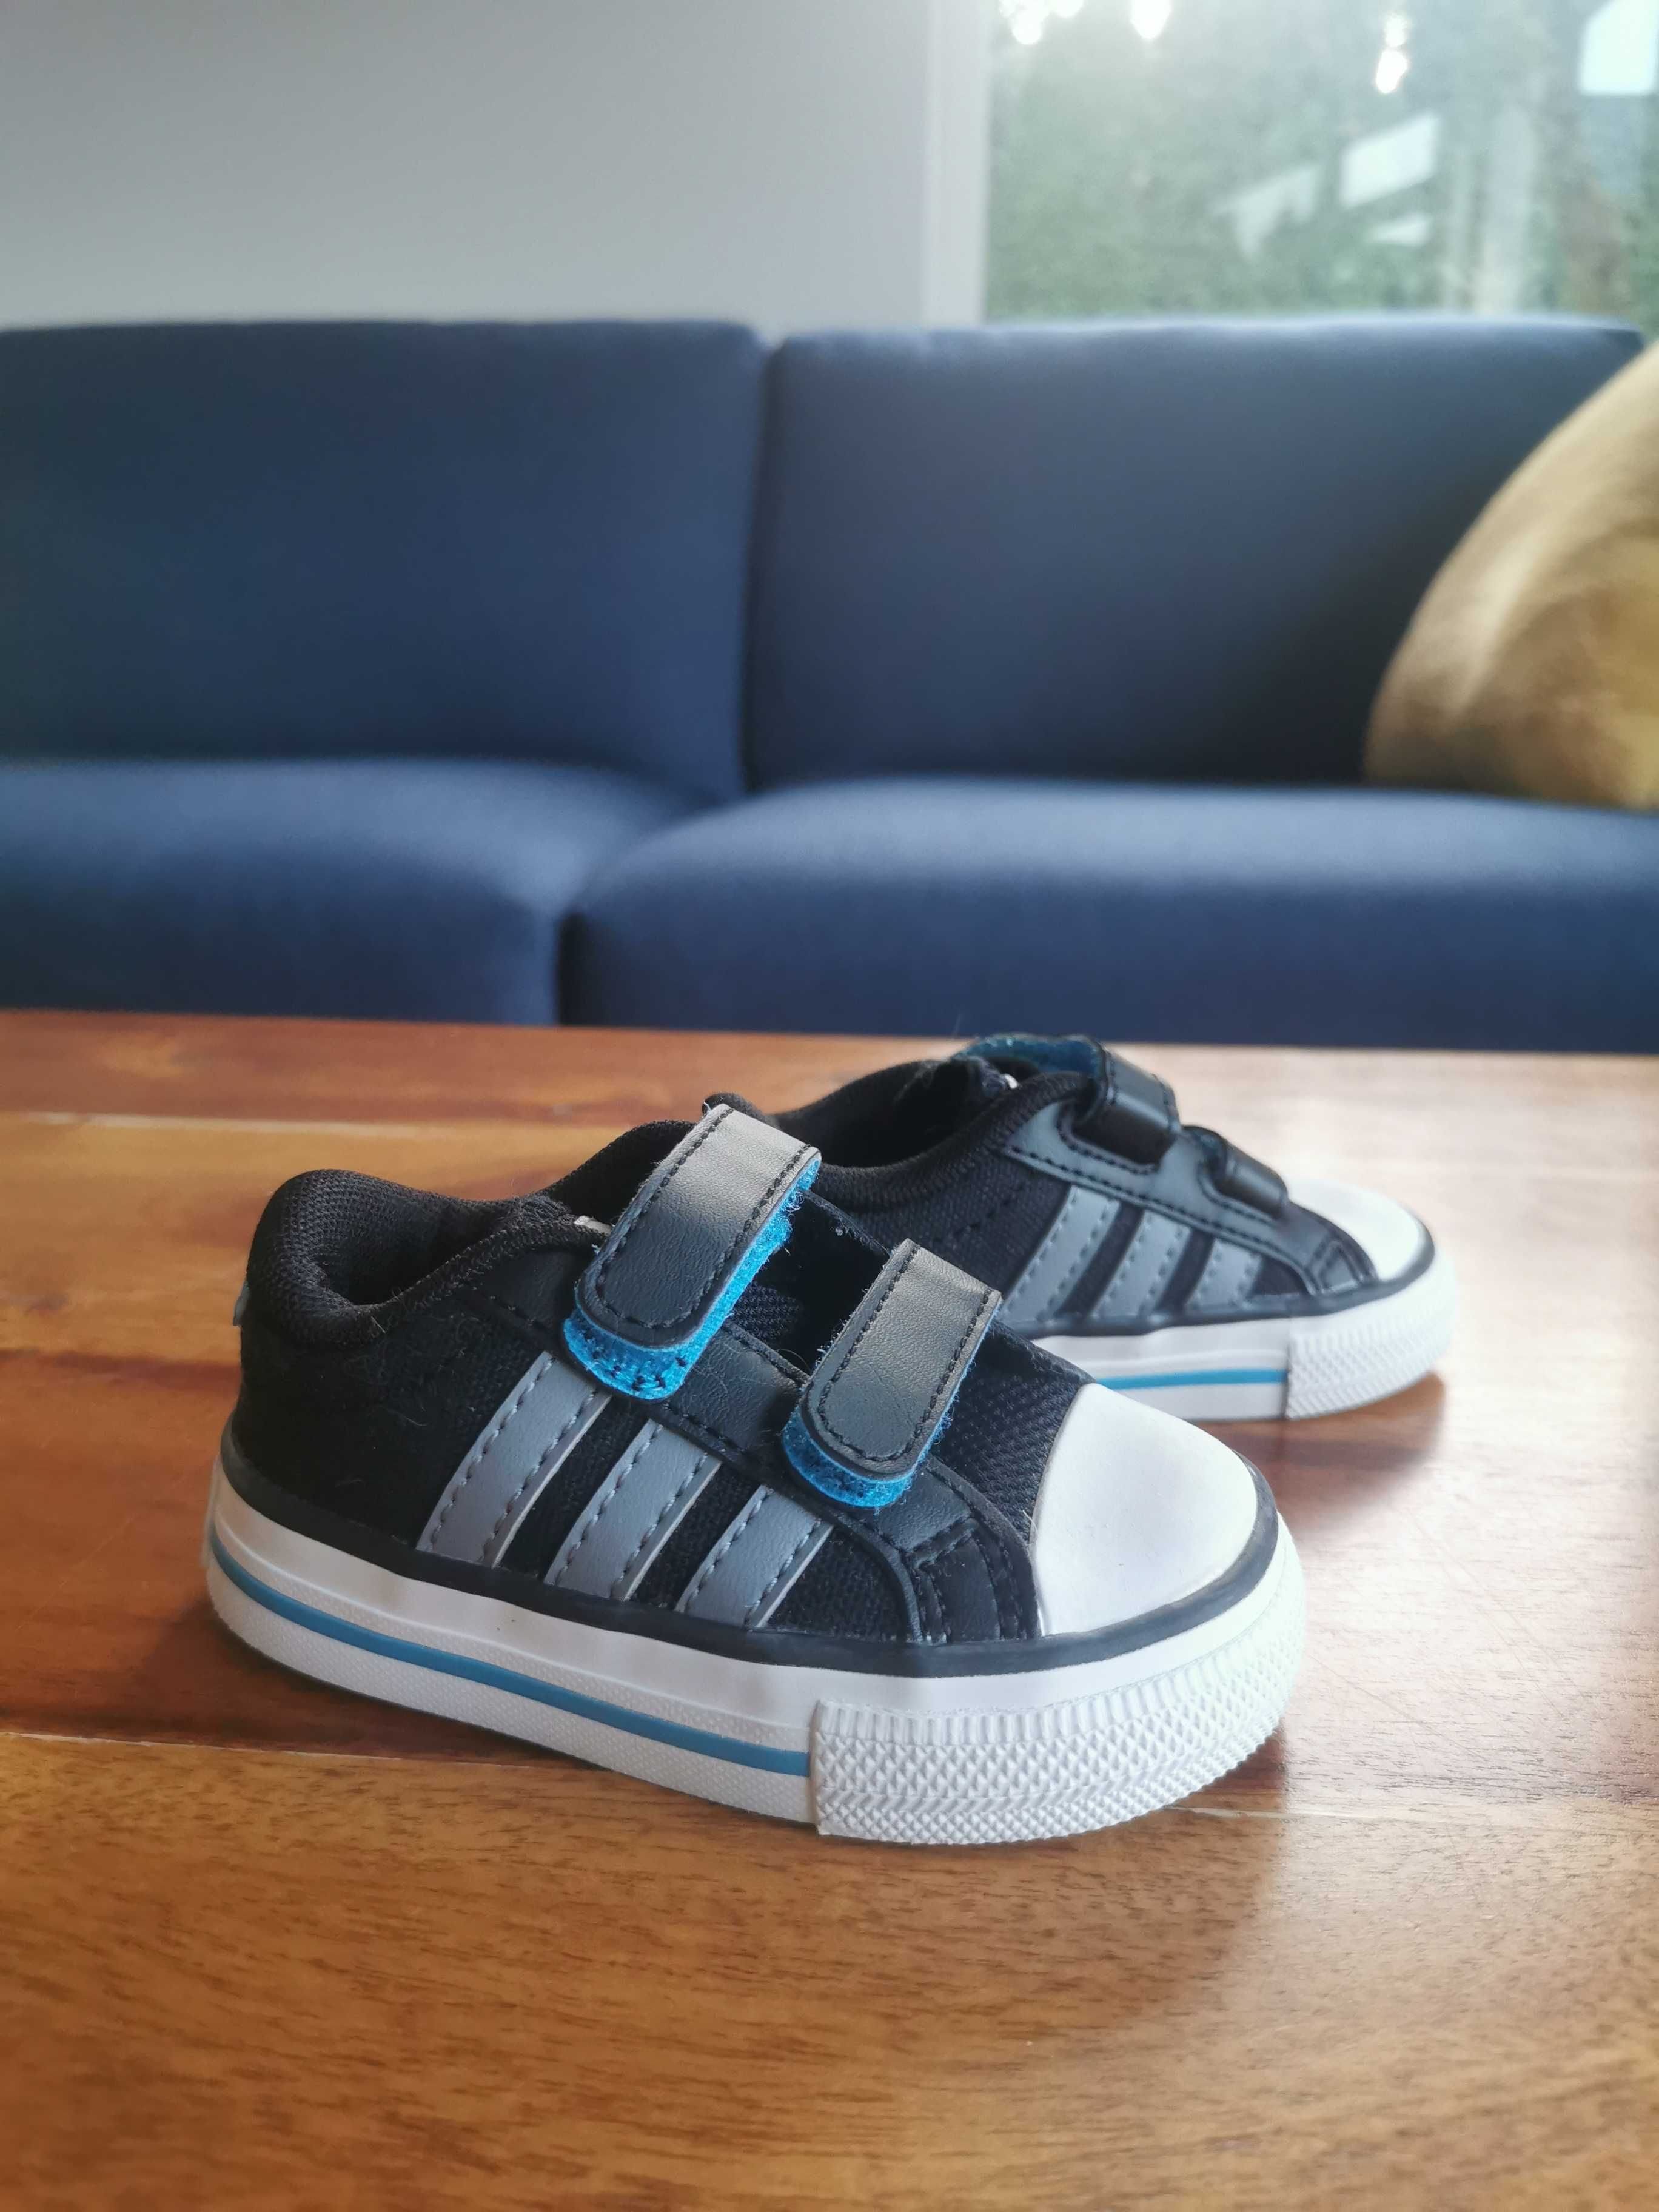 Trampki buty Adidas 3 stripes, 19, nowe